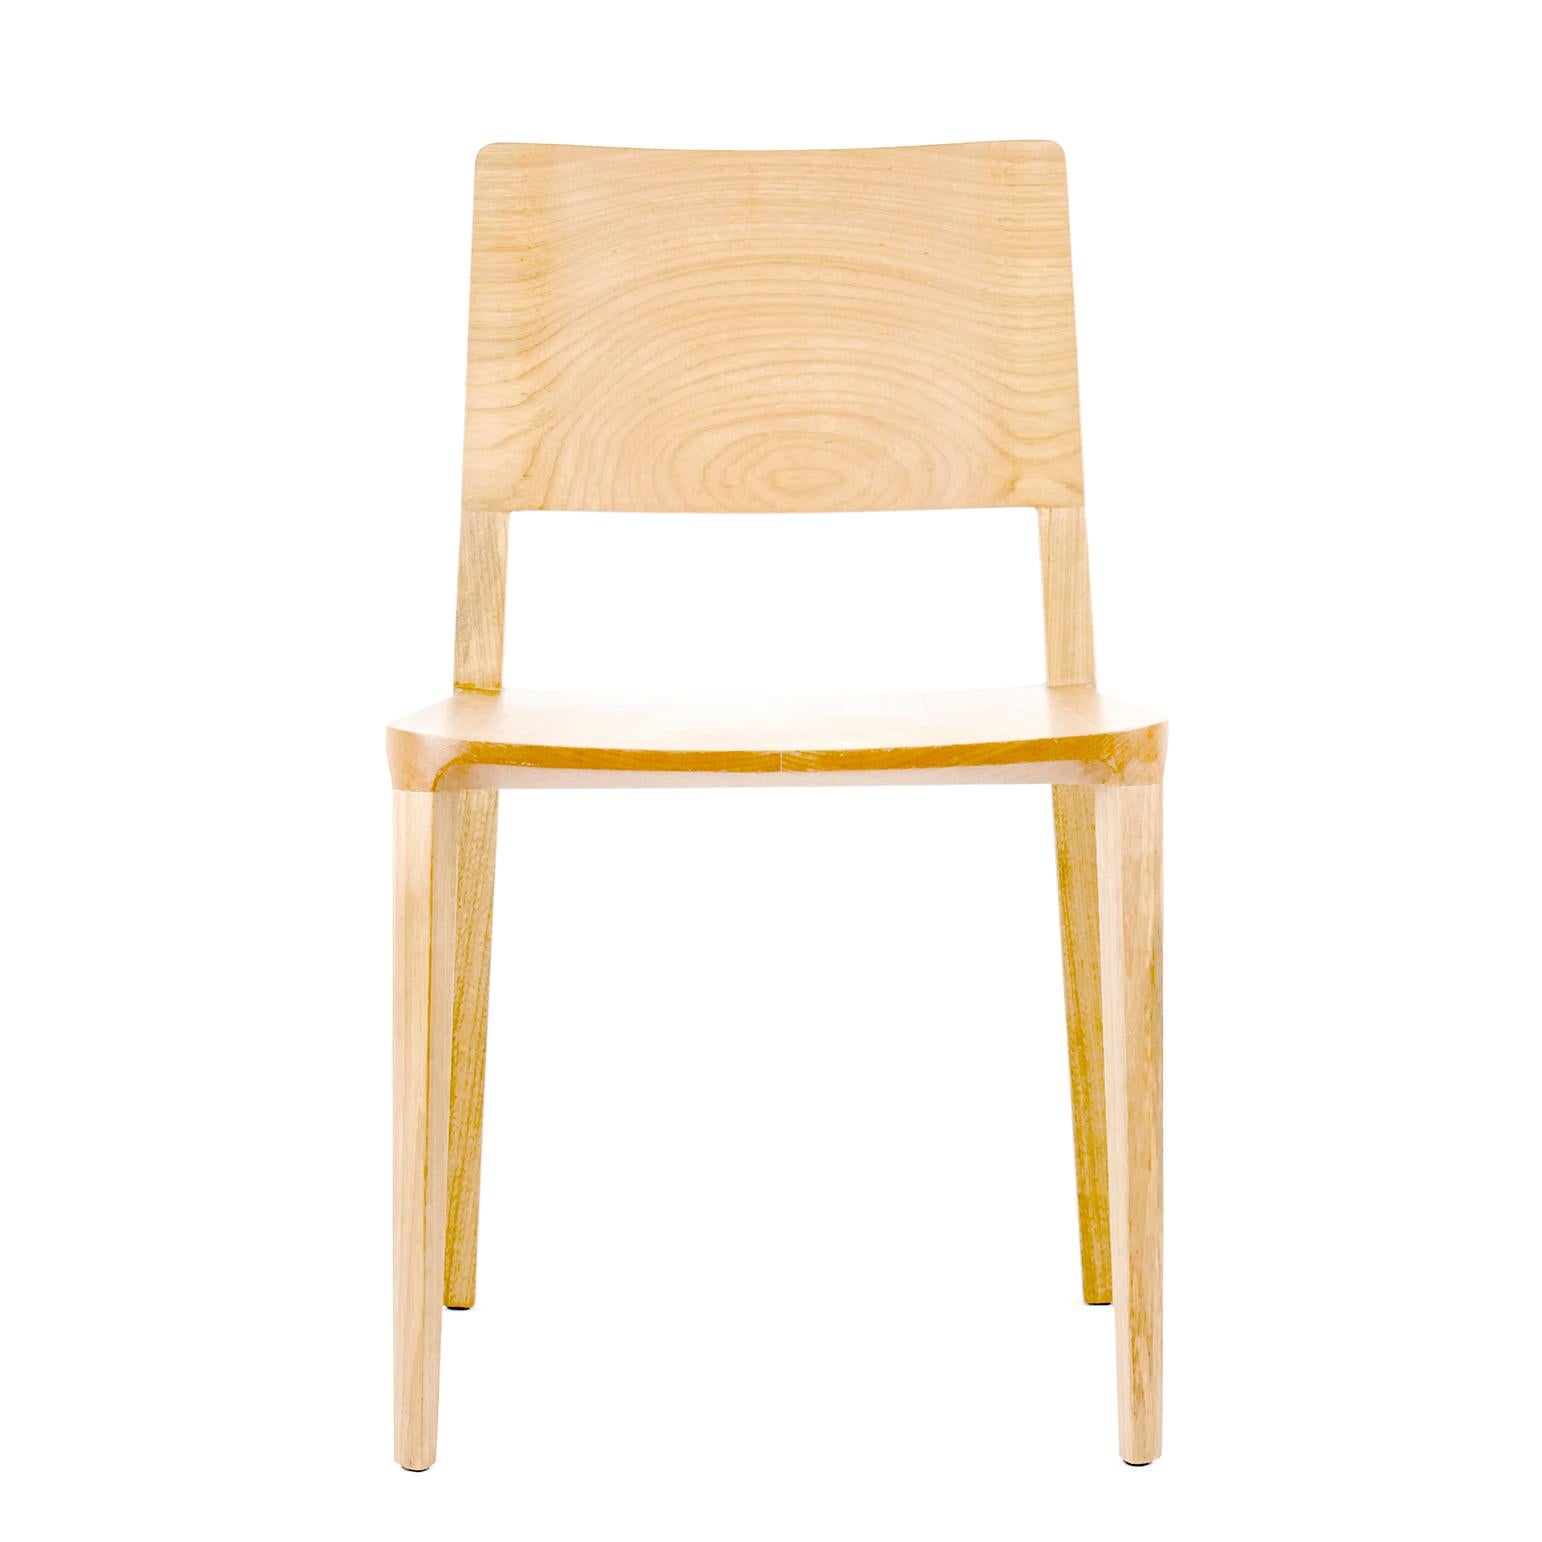 Evo chair collection.

Die Kollektion Evo basiert auf der harmonischen Verschmelzung von geometrischen Formen und der modernen Interpretation der Archetypen des Holzes. 

Alle Elemente, aus denen sich der Stuhl zusammensetzt, werden präzise